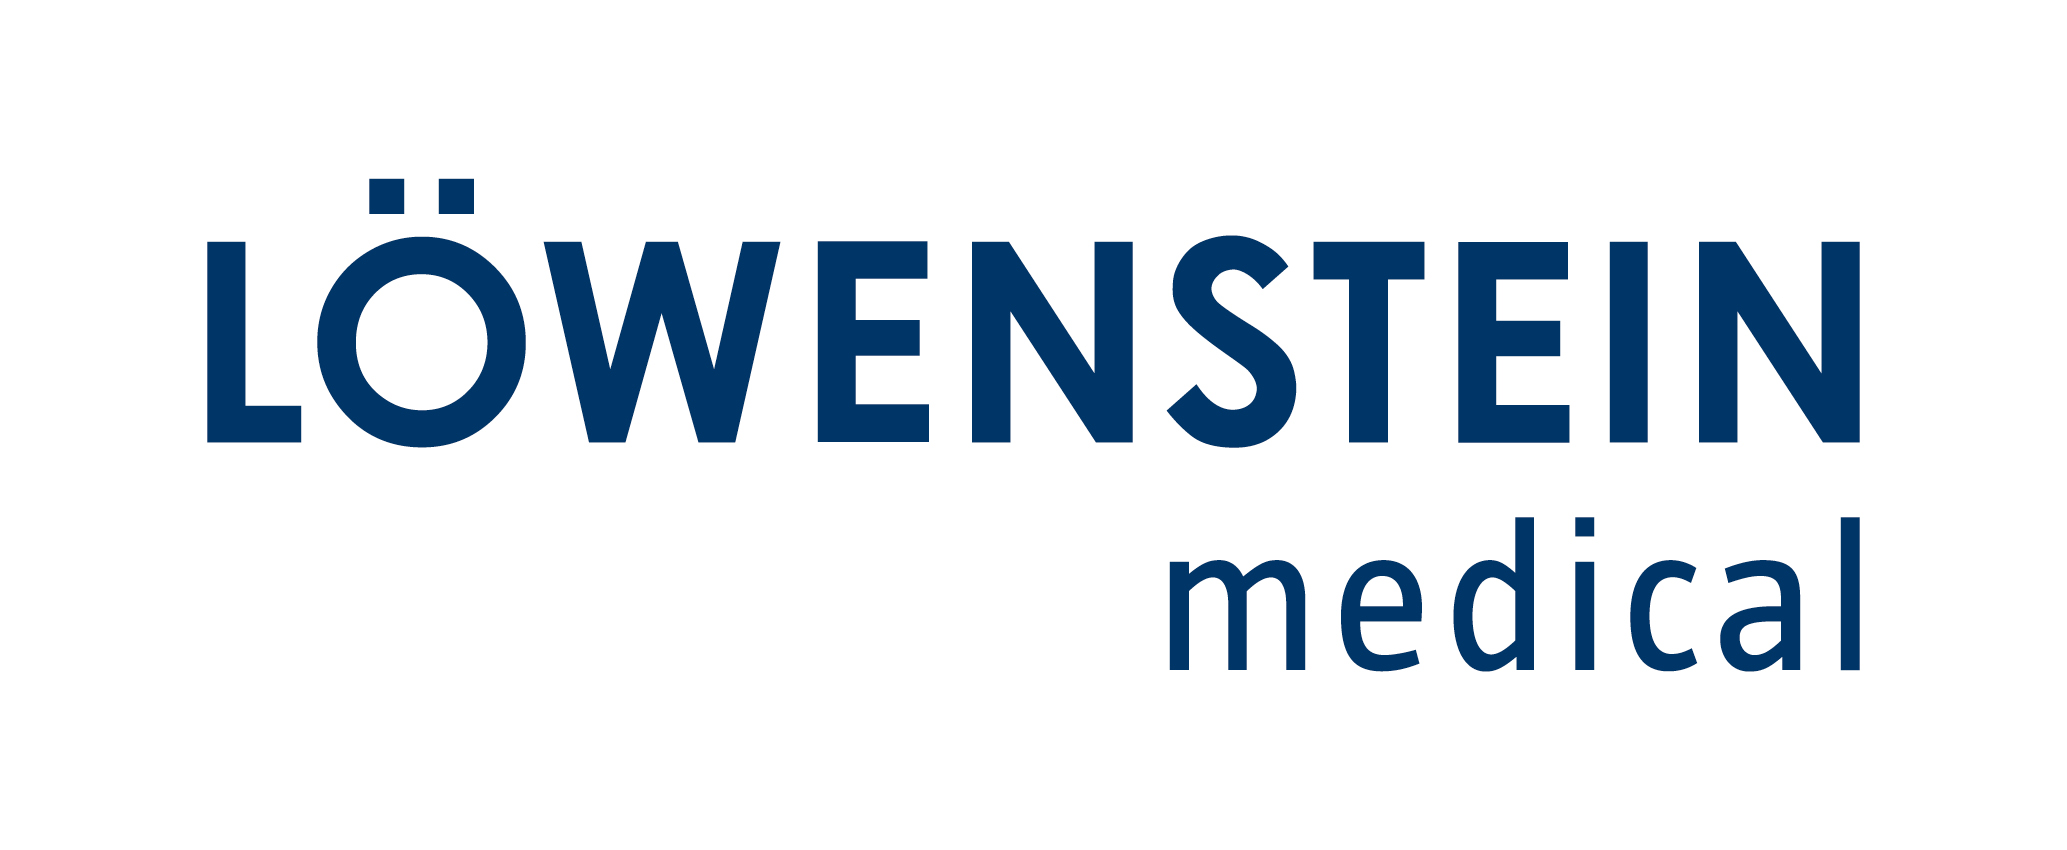 Löwenstein Medical Homecare